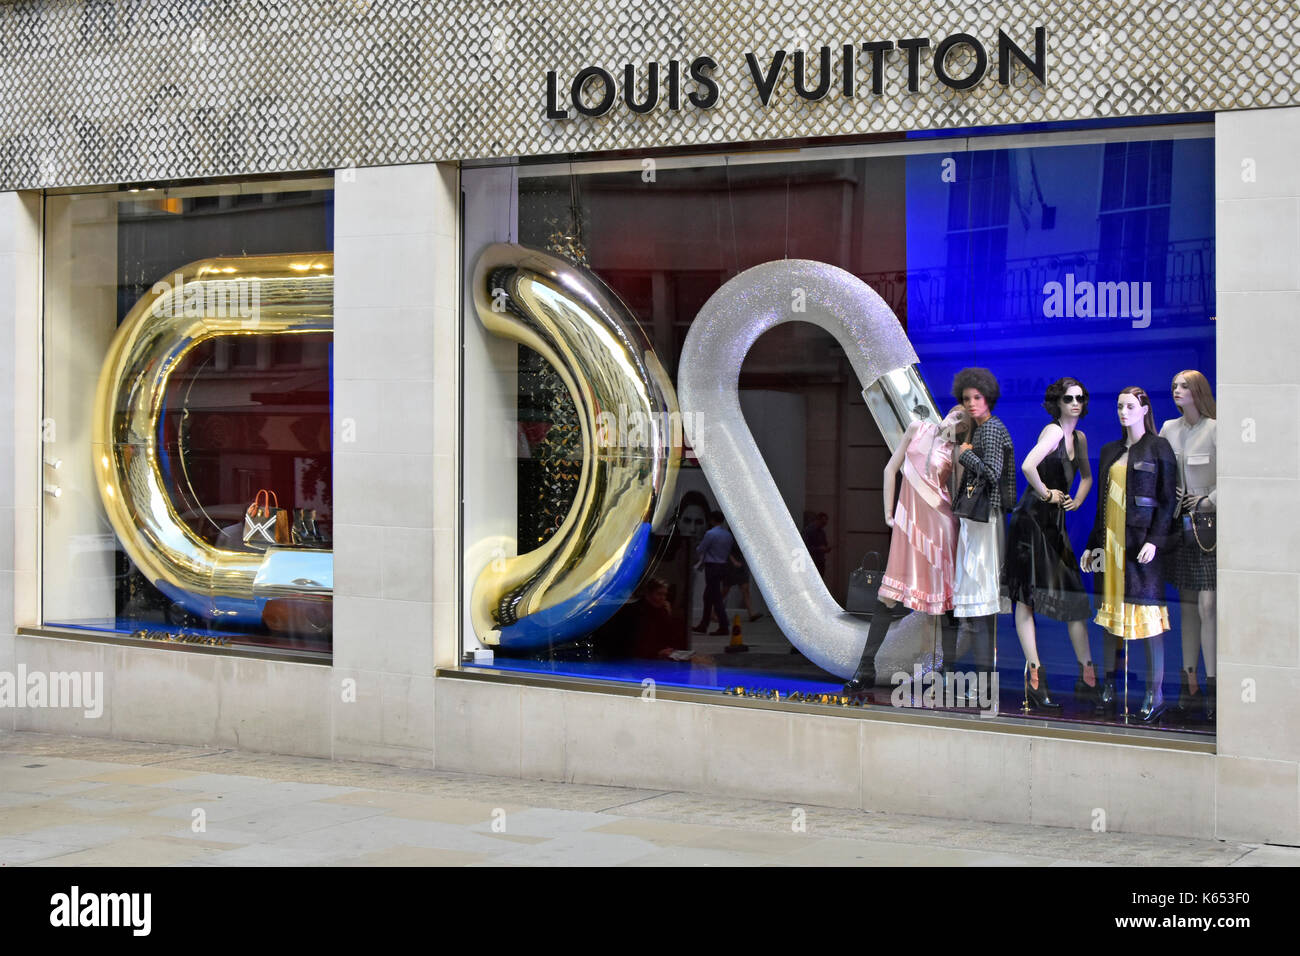 Louis Vuitton shop window display di beni di lusso in corrispondenza della loro zona di Mayfair locali nel nuovo Bond Street nel West End di Londra Inghilterra REGNO UNITO Foto Stock